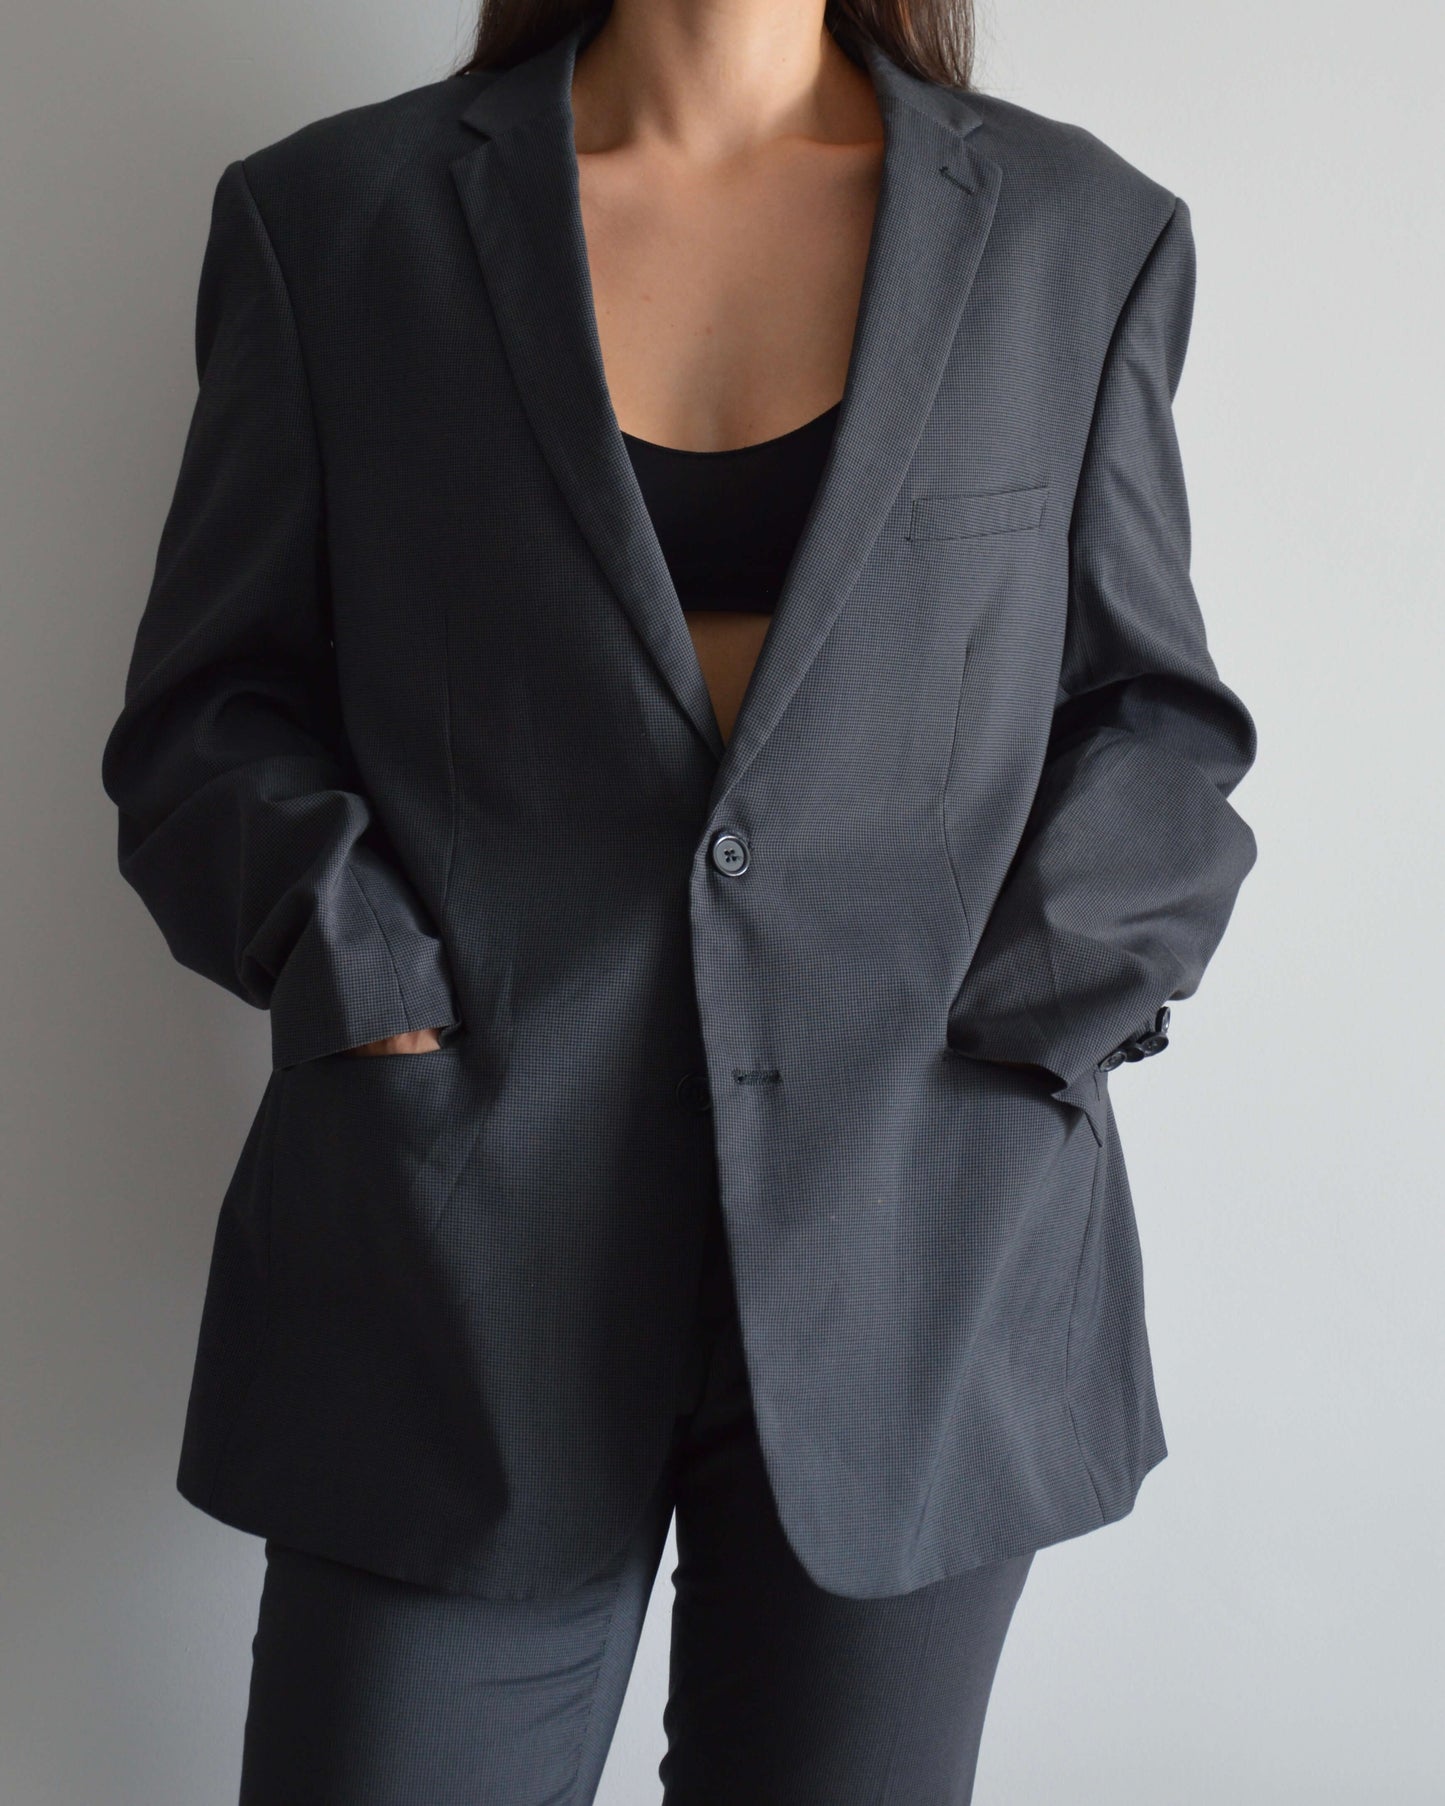 Suit - Black & Grey (XS/M)